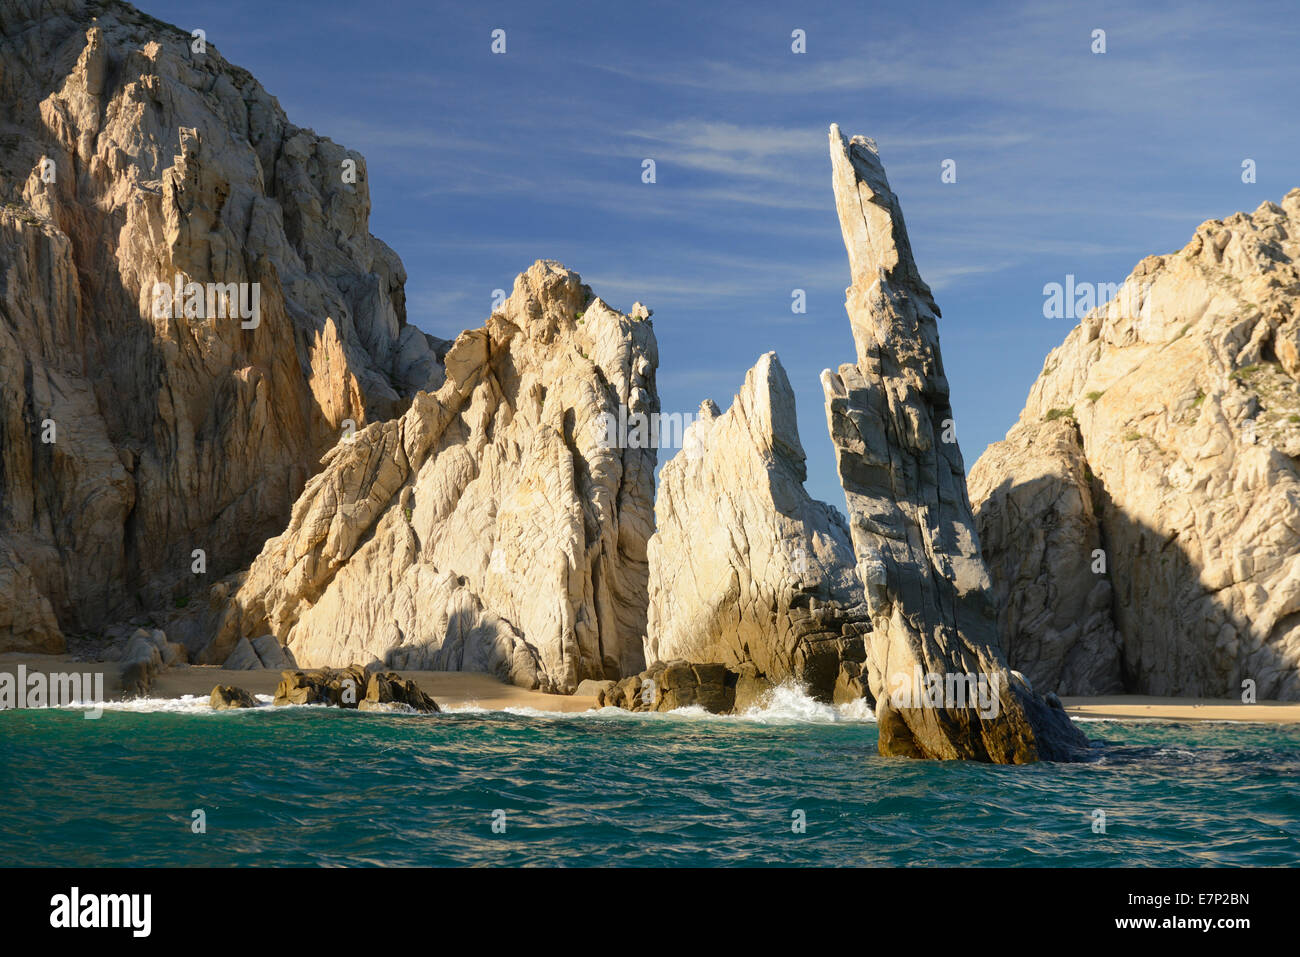 Mexico, North America, Baja, Baja California, Cabo San Lucas, los cabos, lands end, sea, landscape, rock, cliff Stock Photo